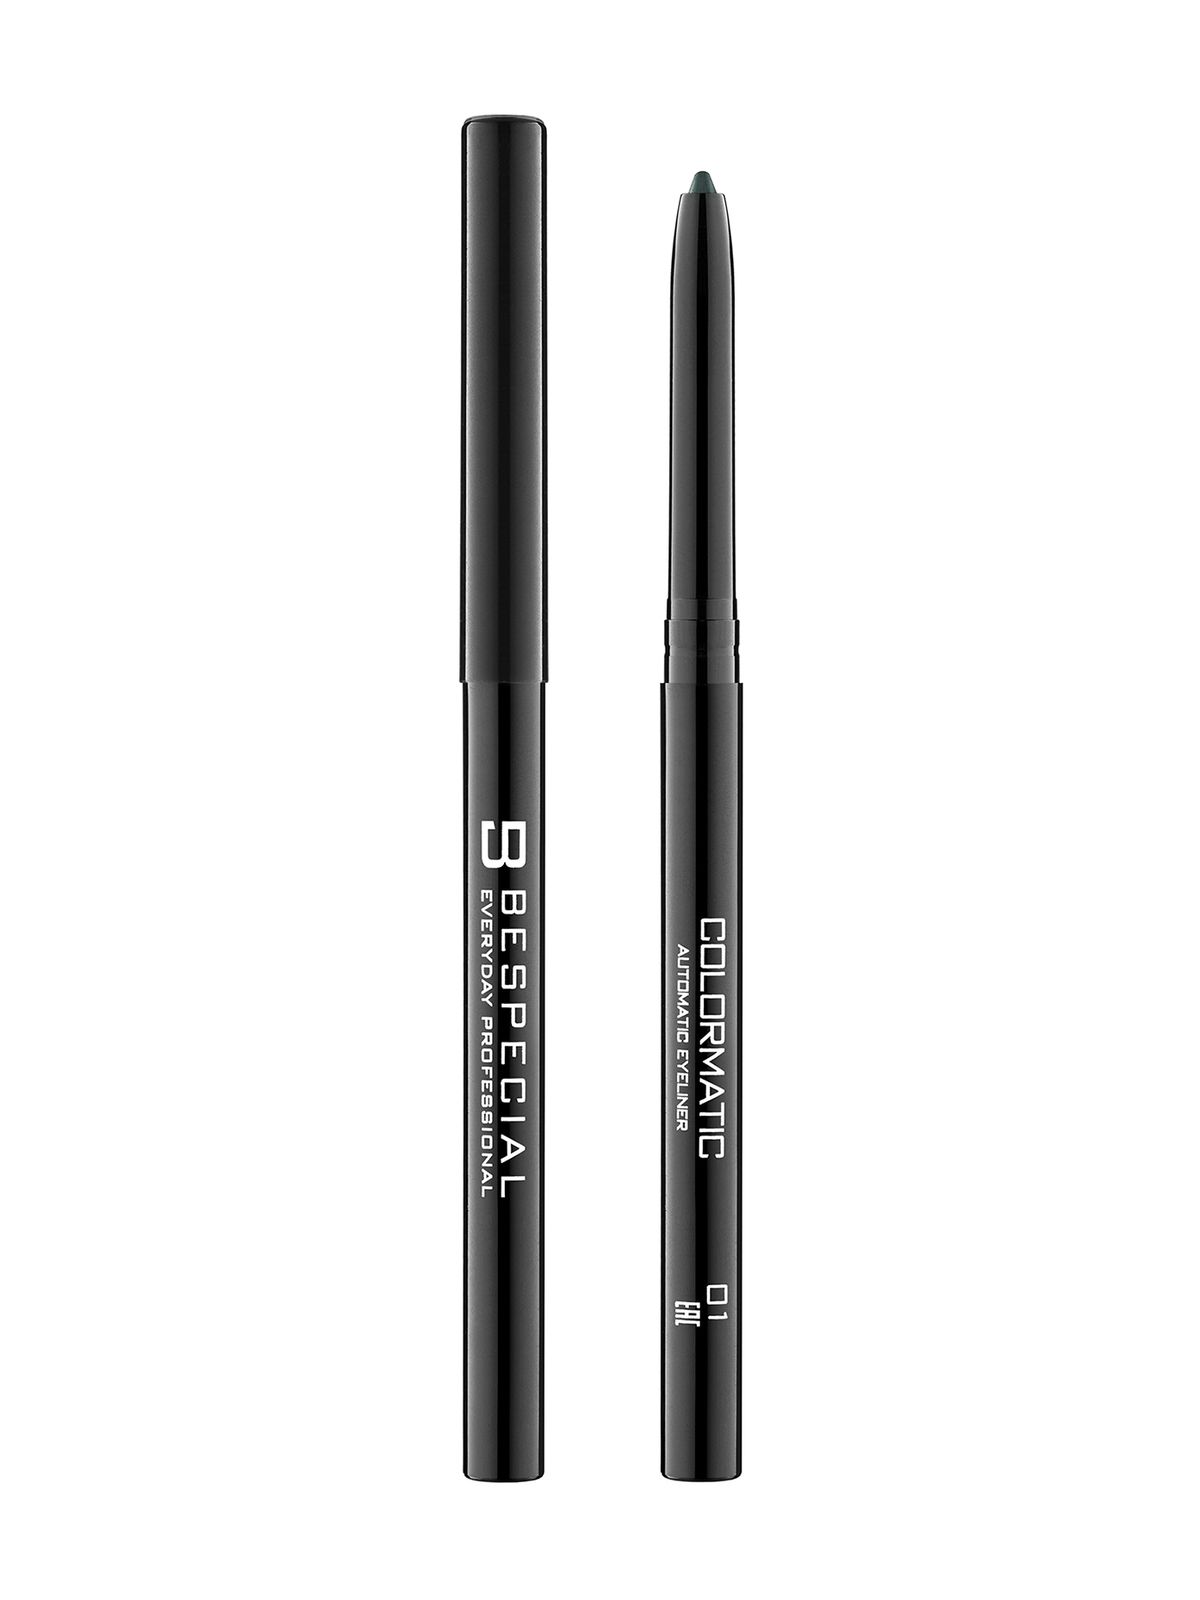 Механический карандаш для глаз Bespecial Colormatic Eye Pencil карандаш для глаз shinewell charm pencil т 2 графитовый